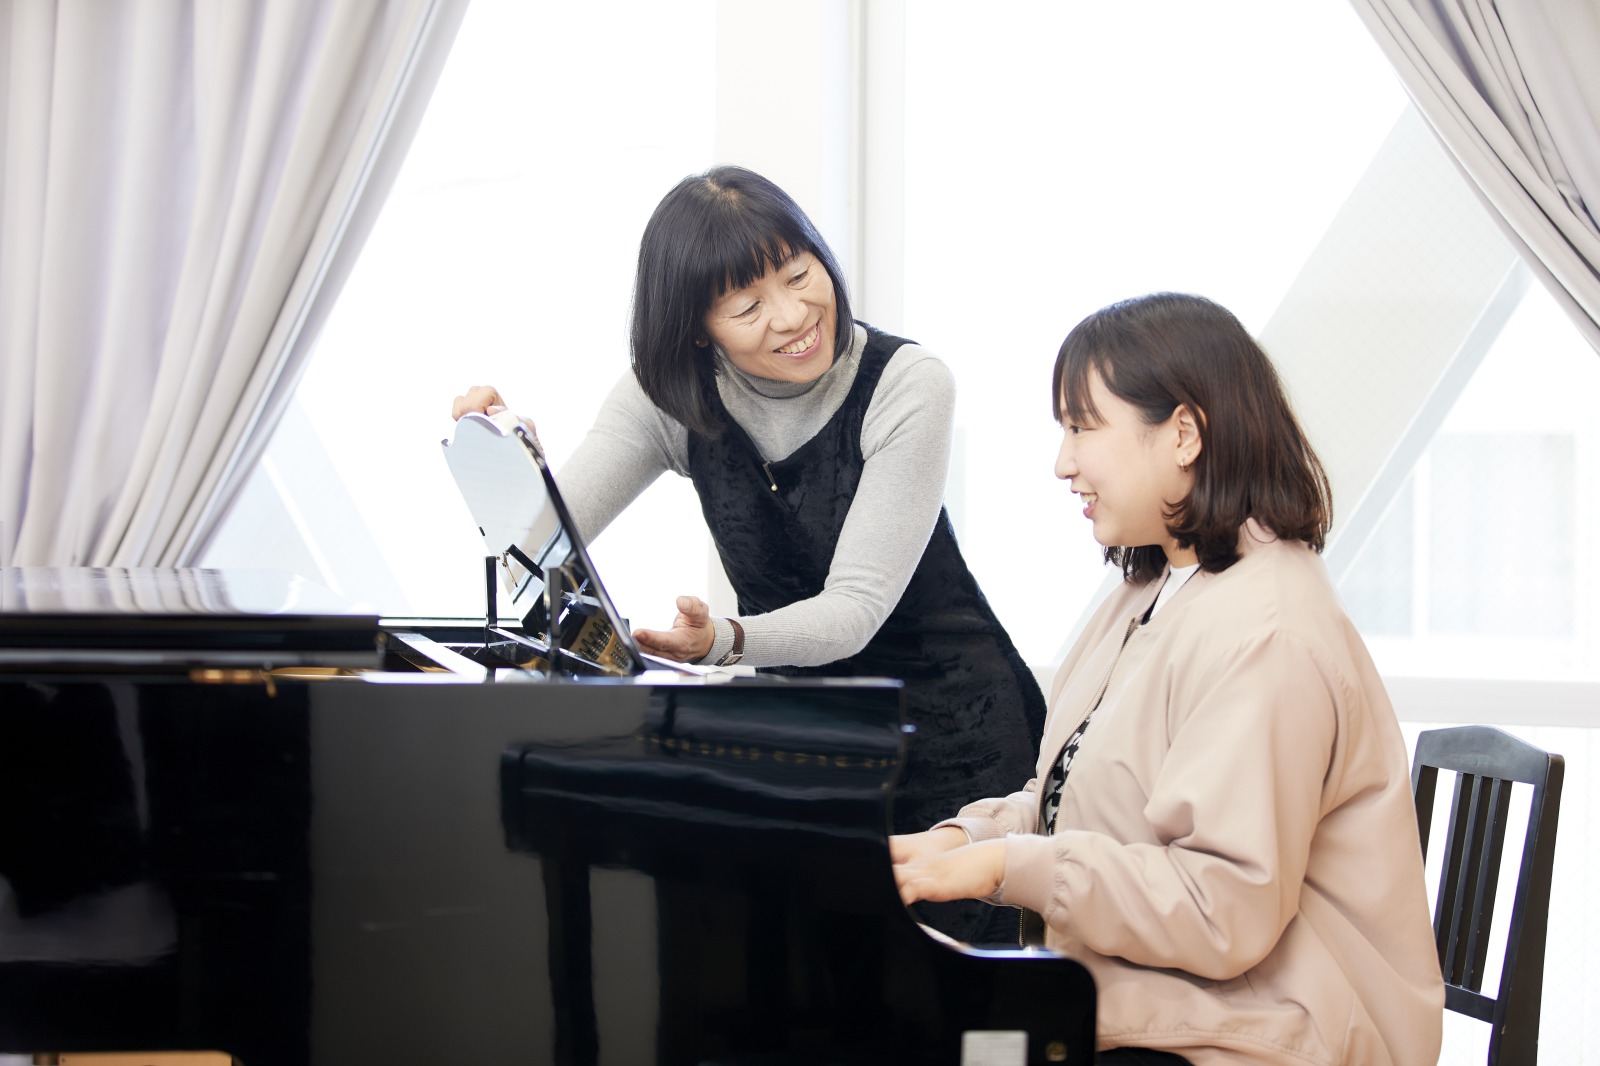 個人レッスンなどピアノ初心者でも安心して学べる施設と充実した授業